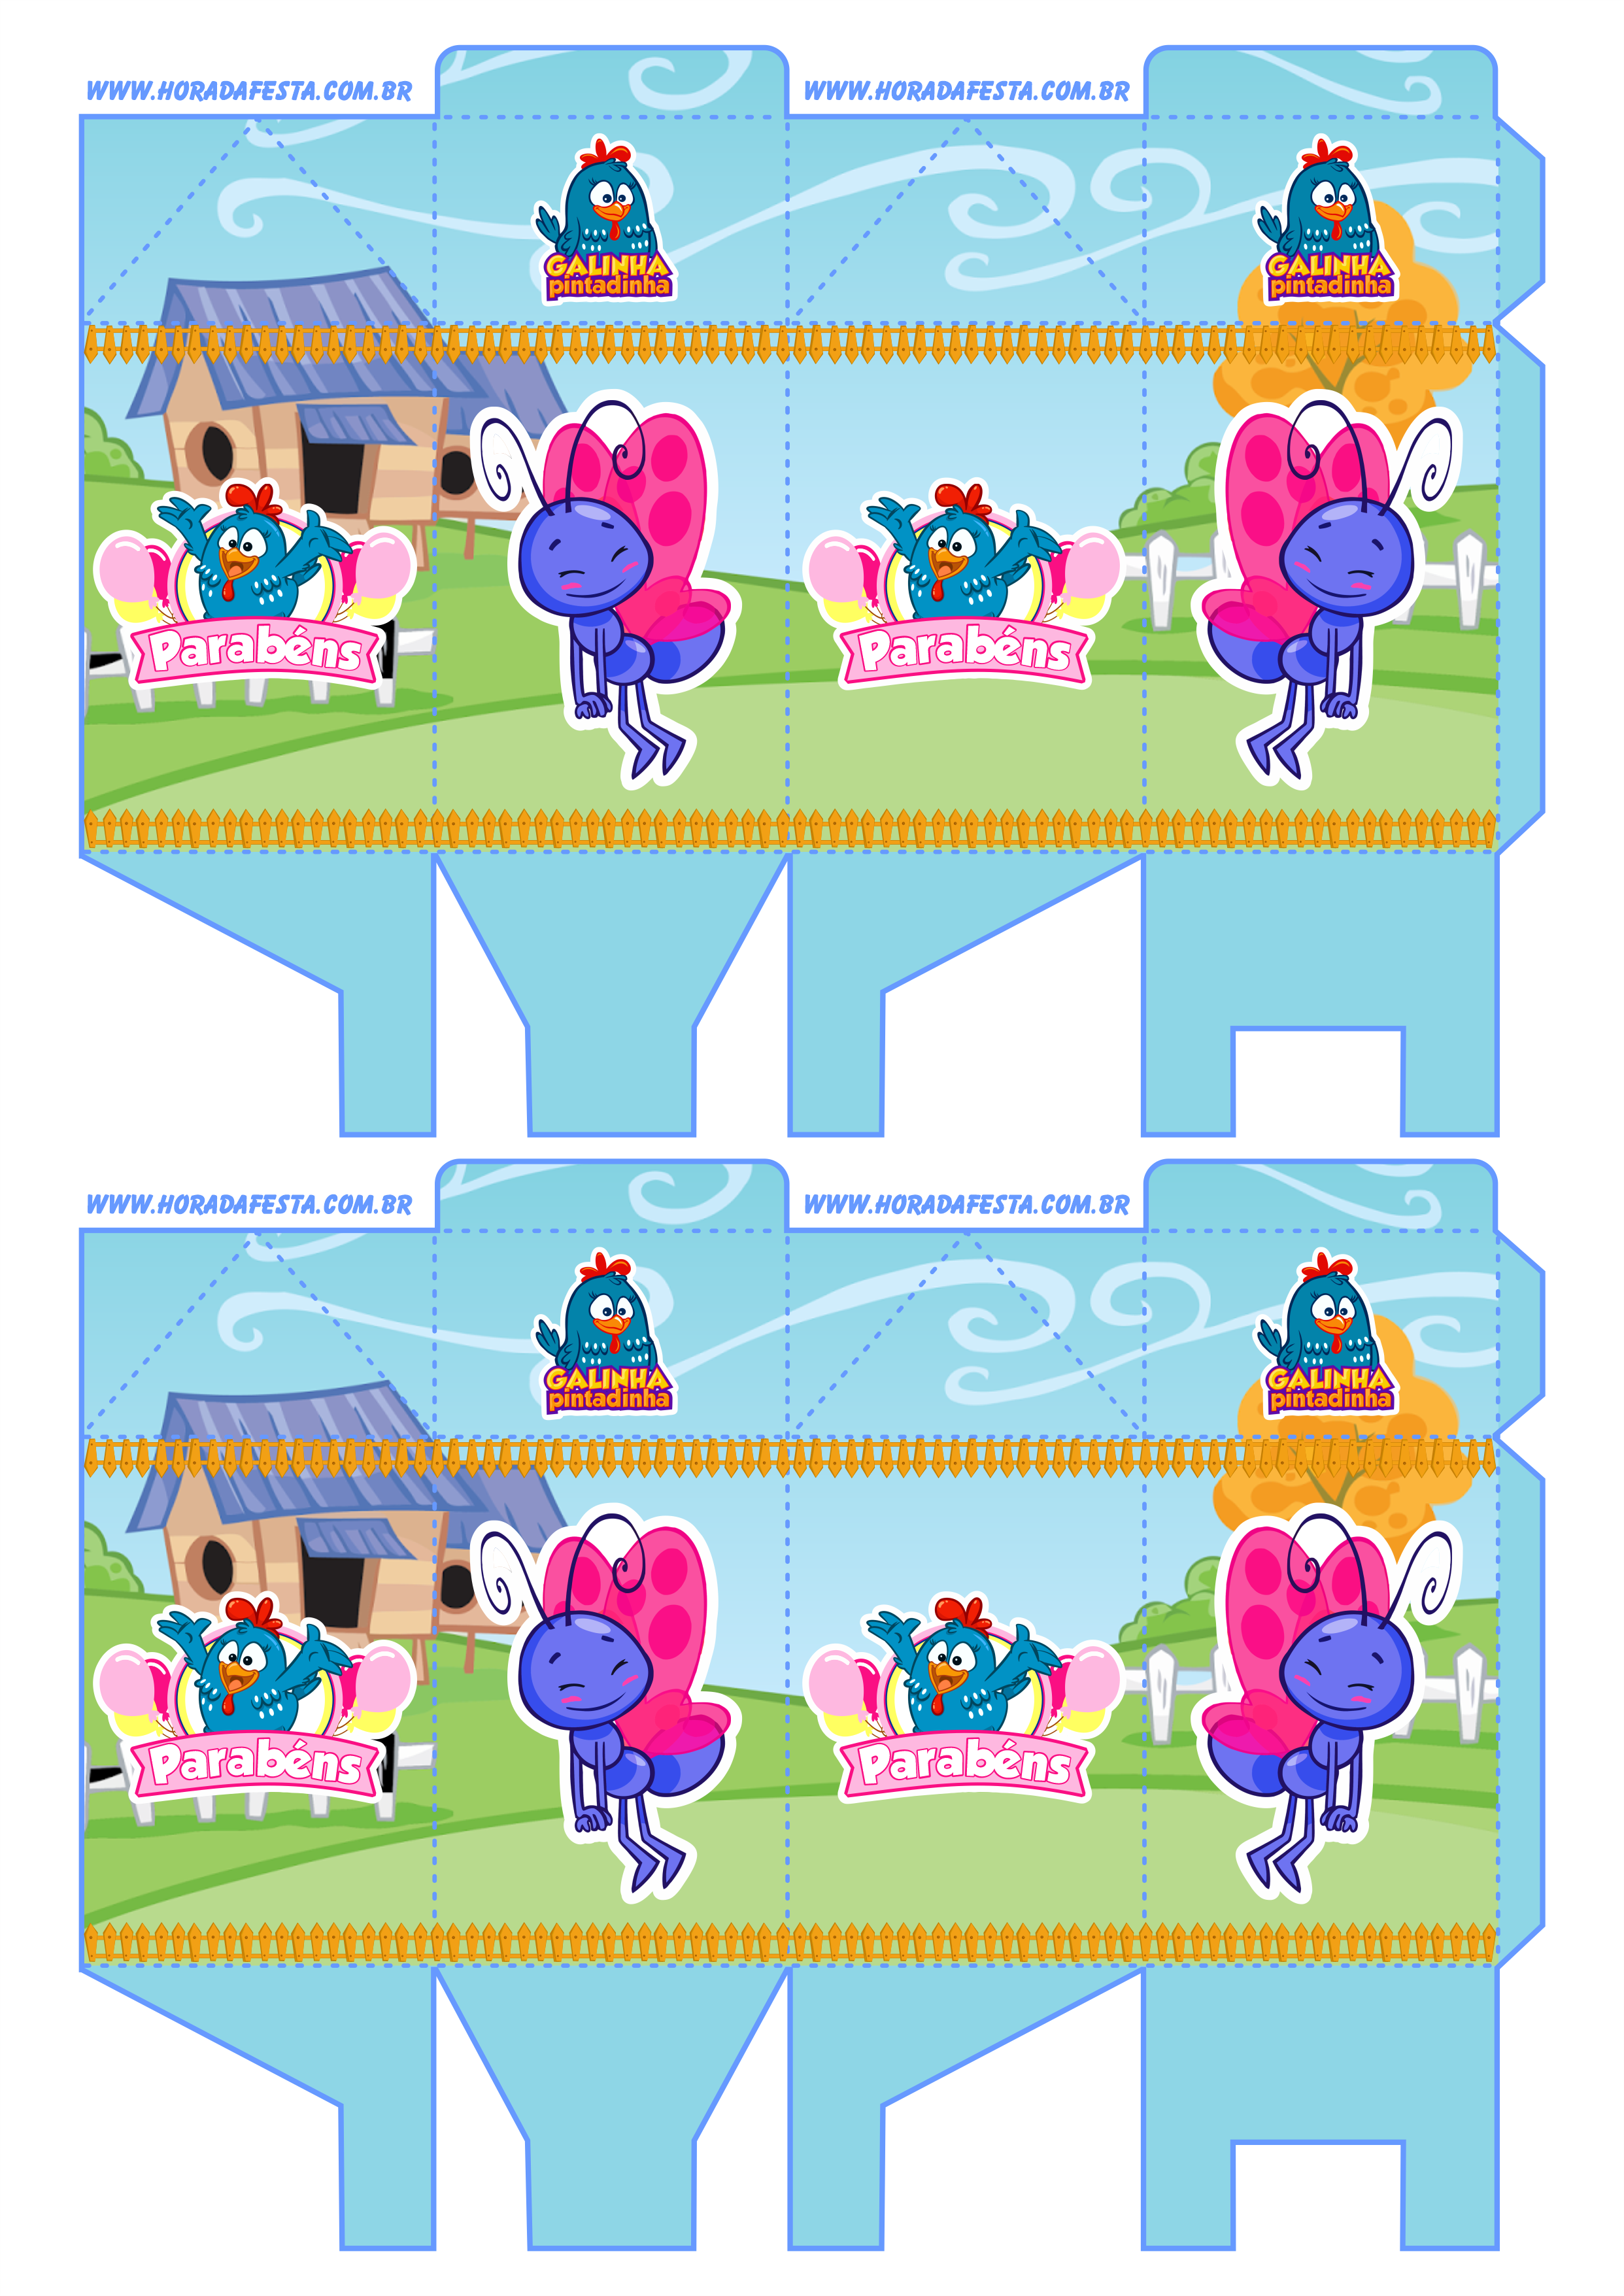 Artigos de papelaria molde caixinha de leite galinha pintadinha rosa borboletinha pack de imagens 2 imagens png